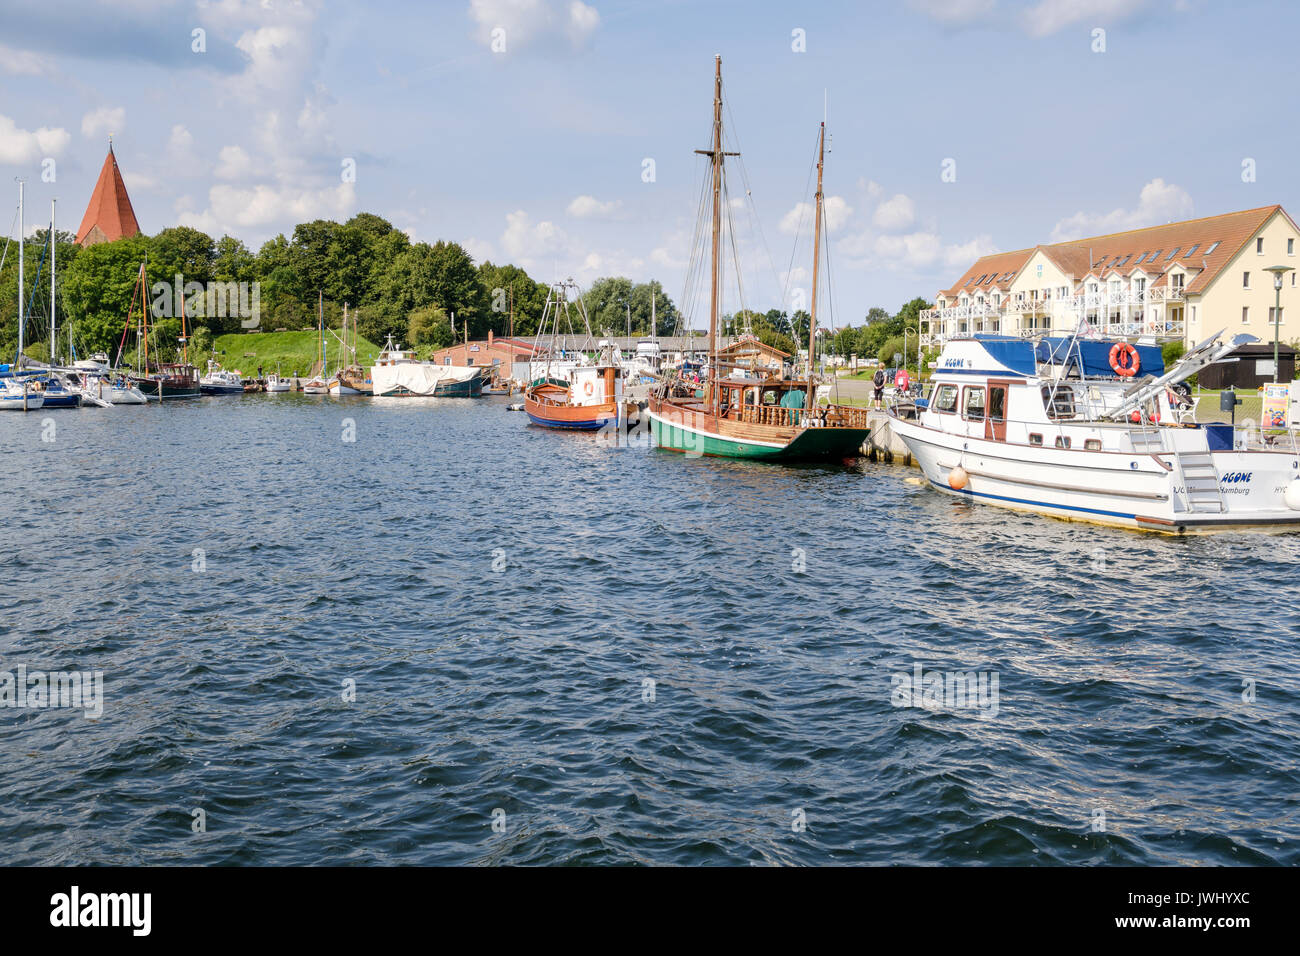 Hafen von Kirchdorf, Poel, Mecklenburg-Vorpommern, Deutschland Stockfoto